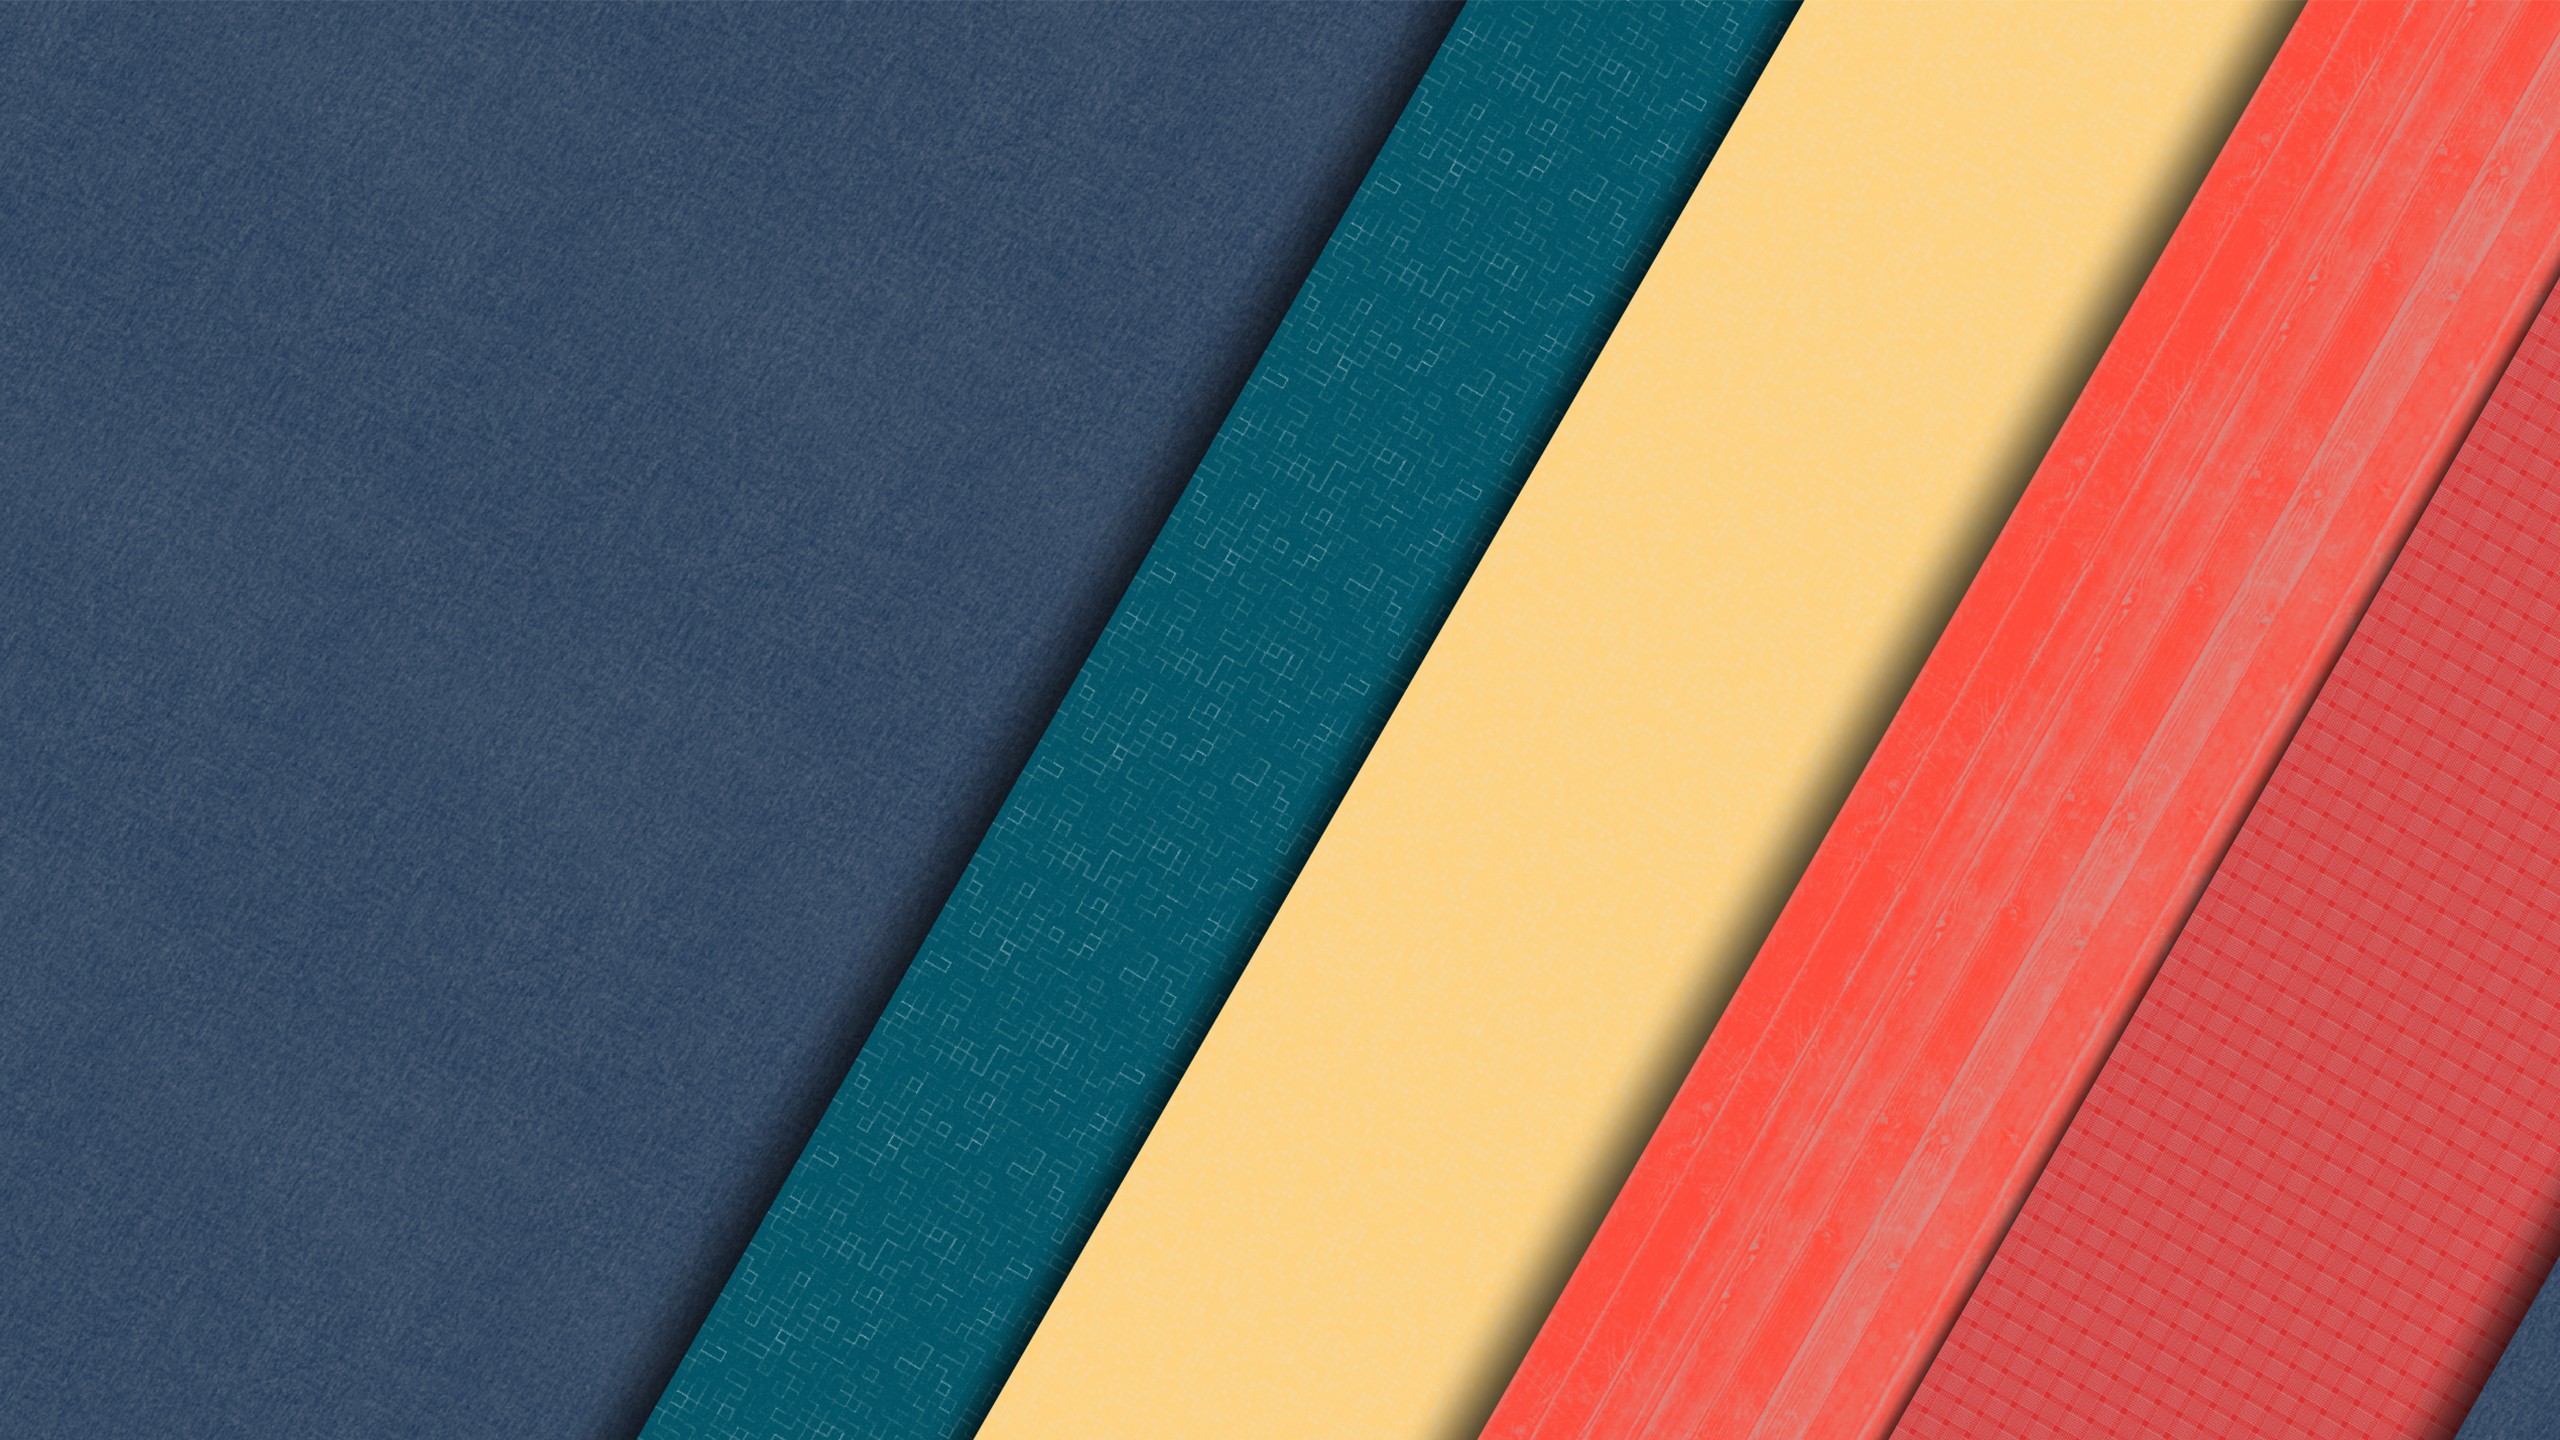 desktop di materiale design sfondi,blu,rosso,giallo,turchese,tessile